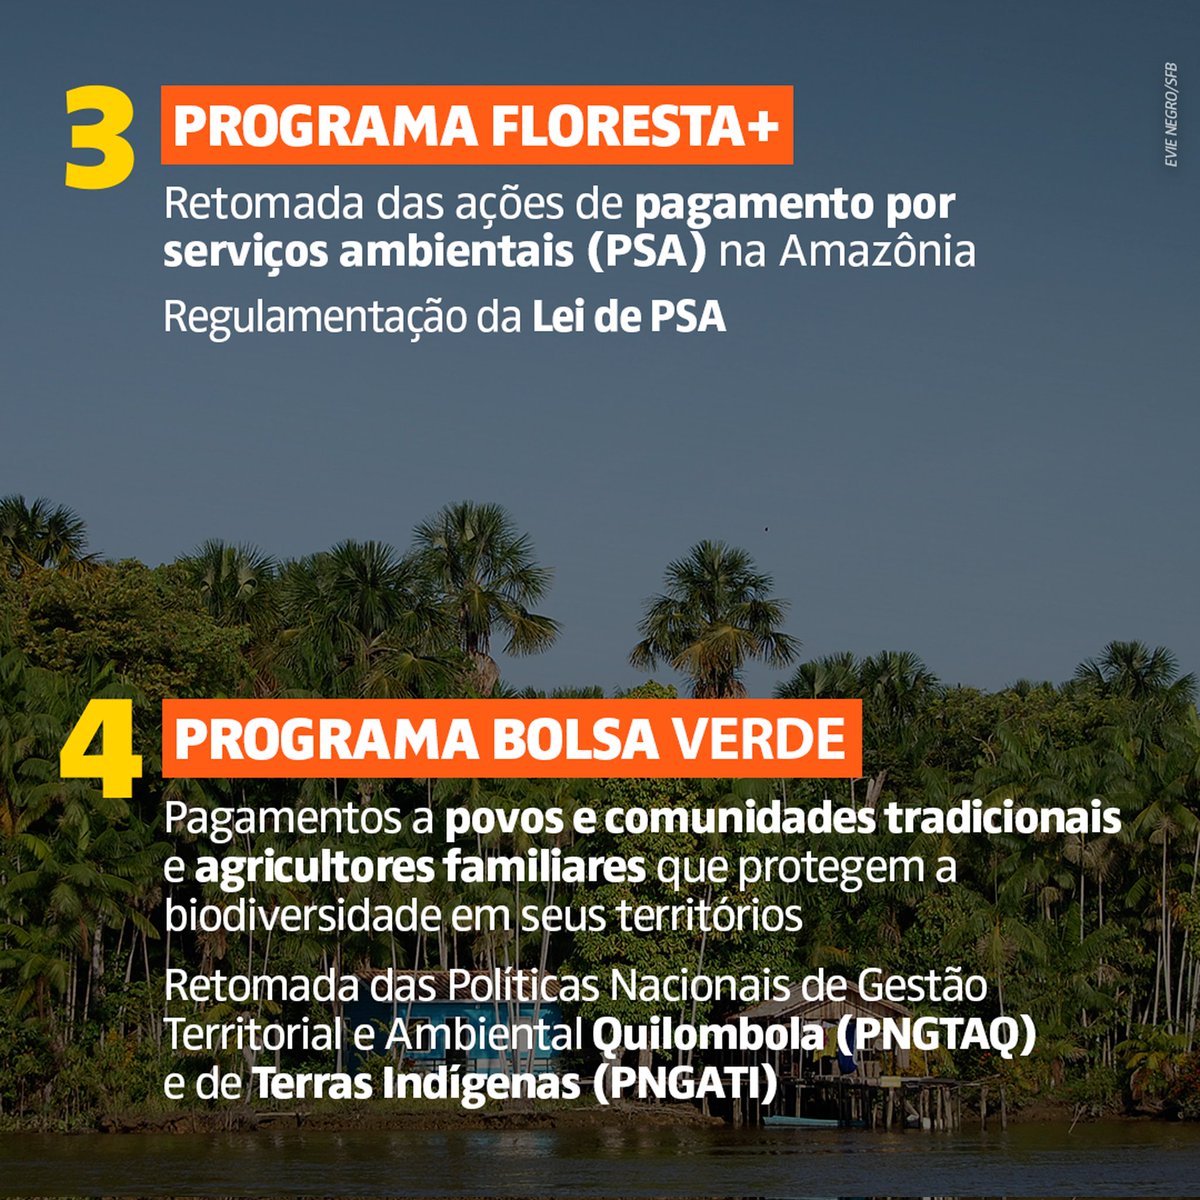 1. Queda de 50% do desmatamento na Amazônia em 2023. 2. Retomada da criação de Unidades de Conservação e Terras Indígenas. 3 e 4. Programas Floresta+ e Bolsa Verde, políticas de pagamento por serviços ambientais e de proteção a povos e comunidades tradicionais. +